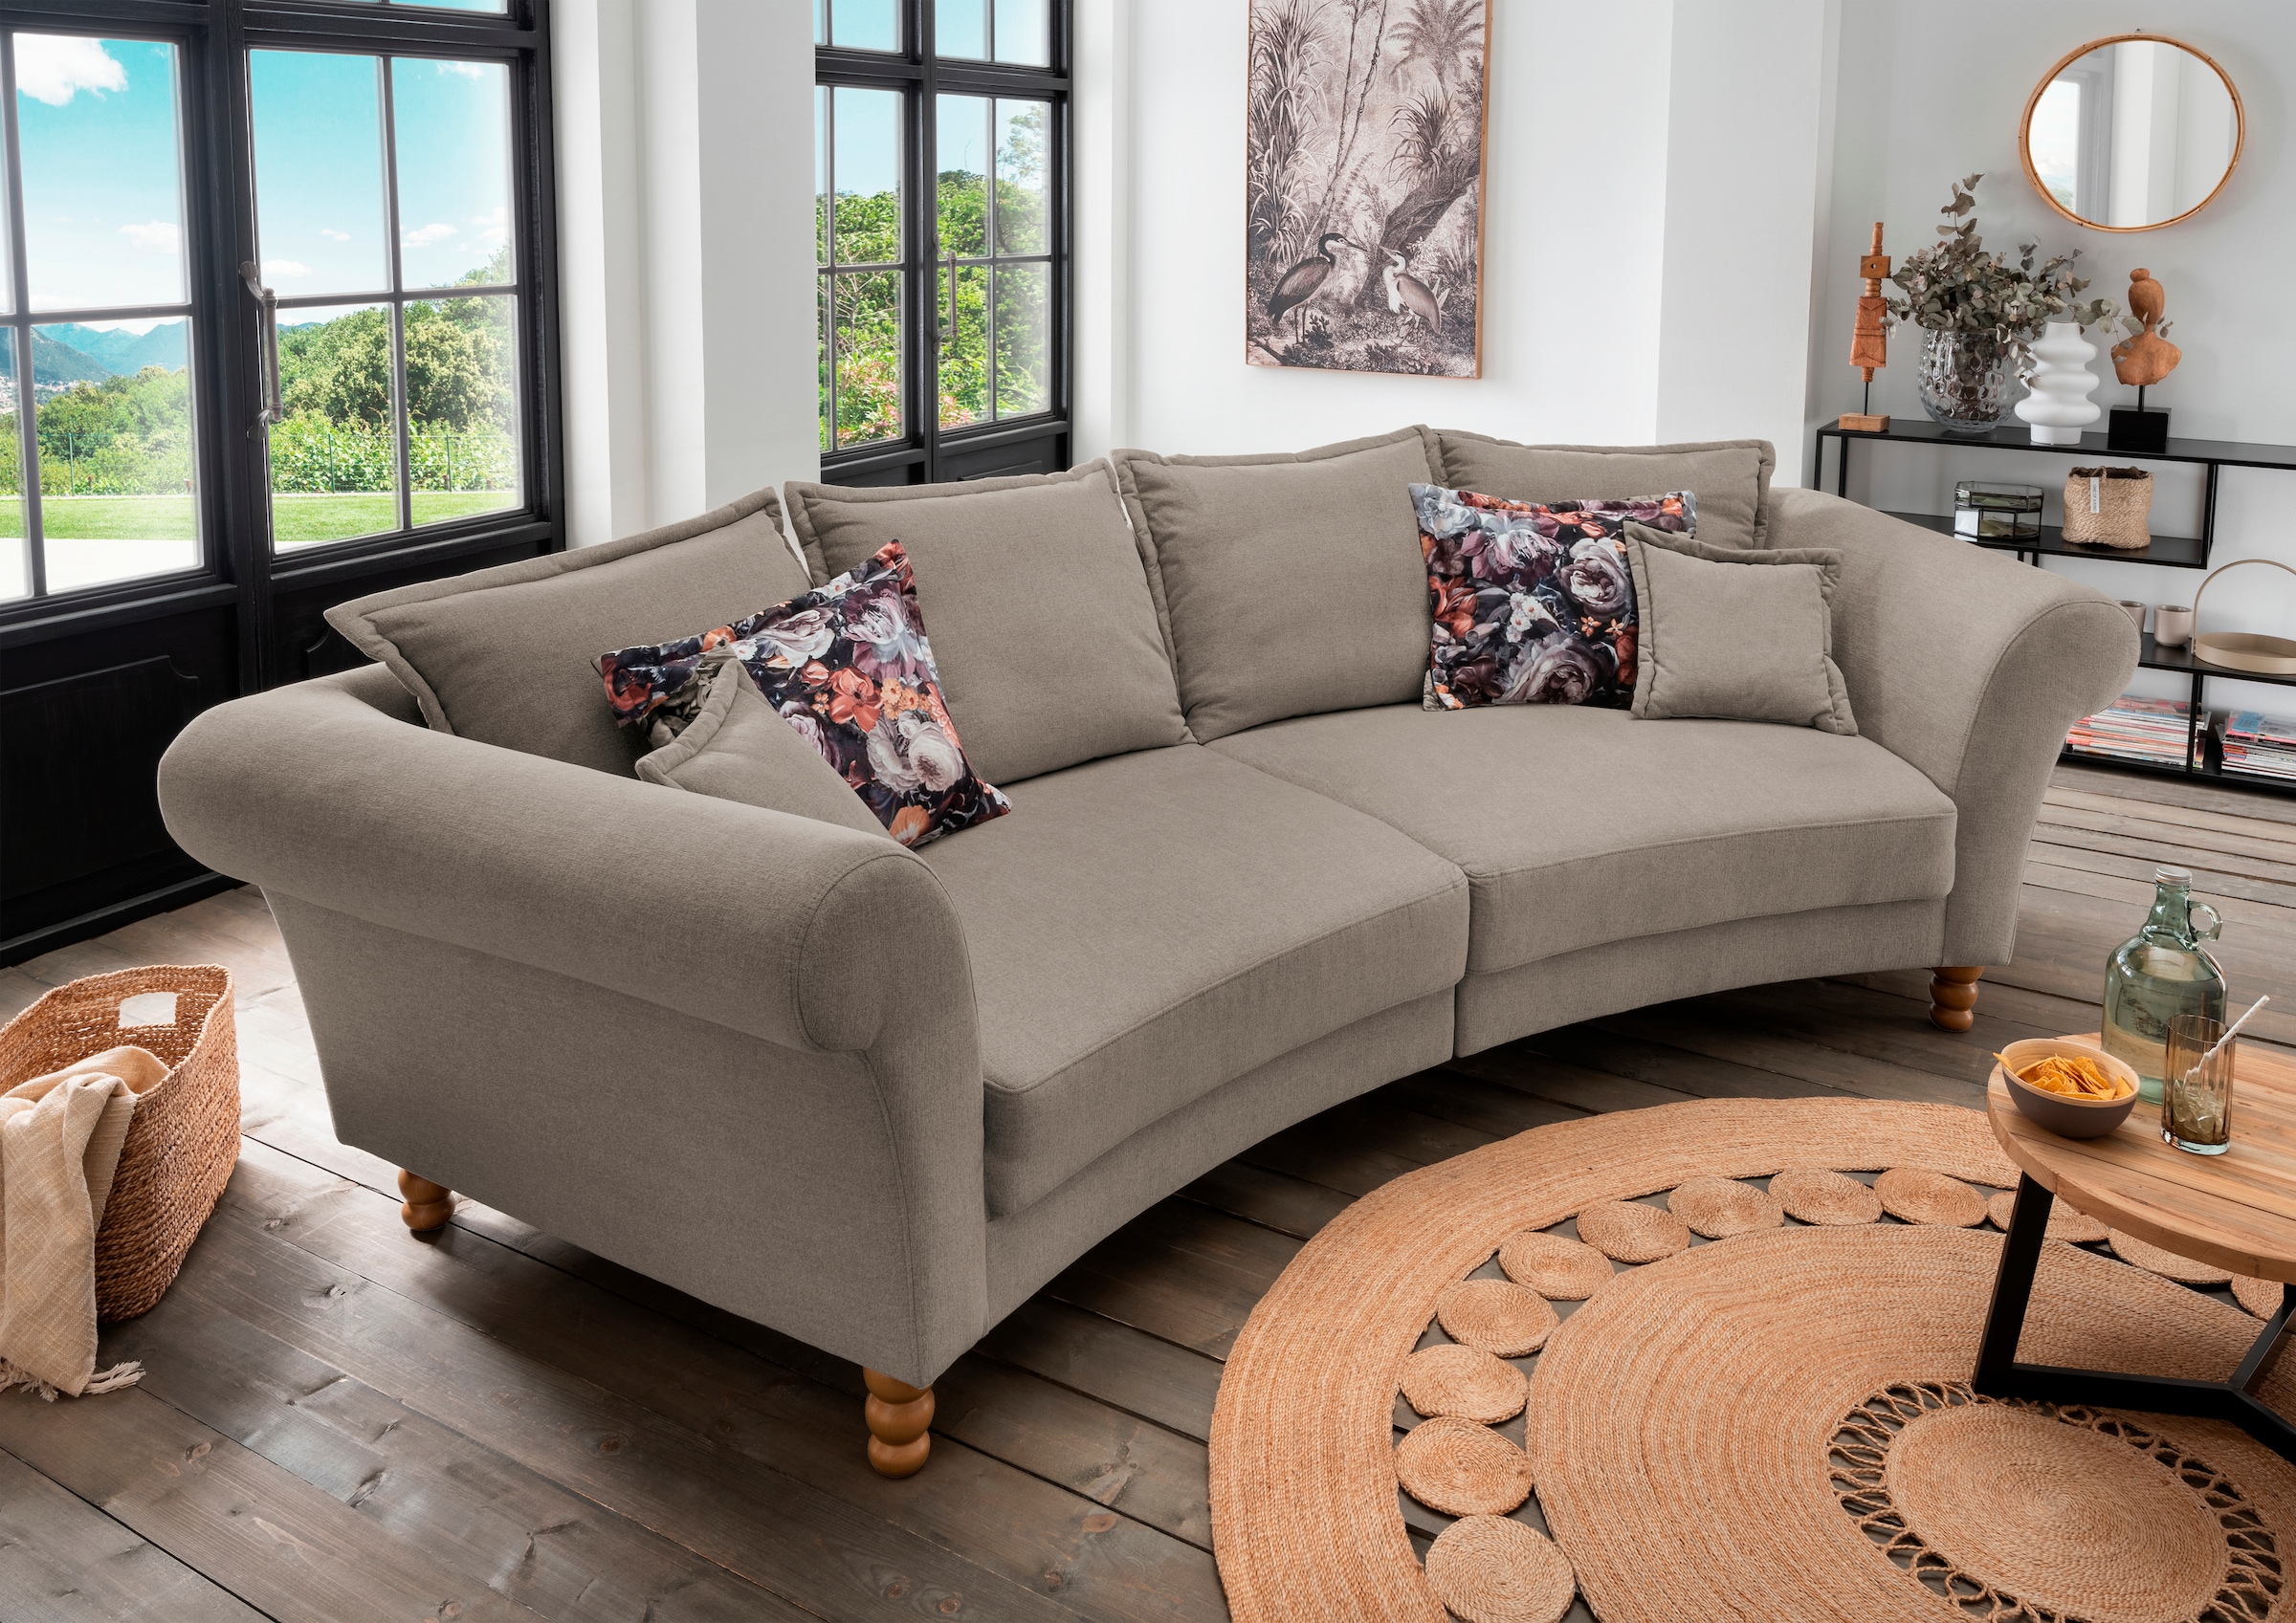 Big-Sofa bestellen online »Tassilo« Home affaire